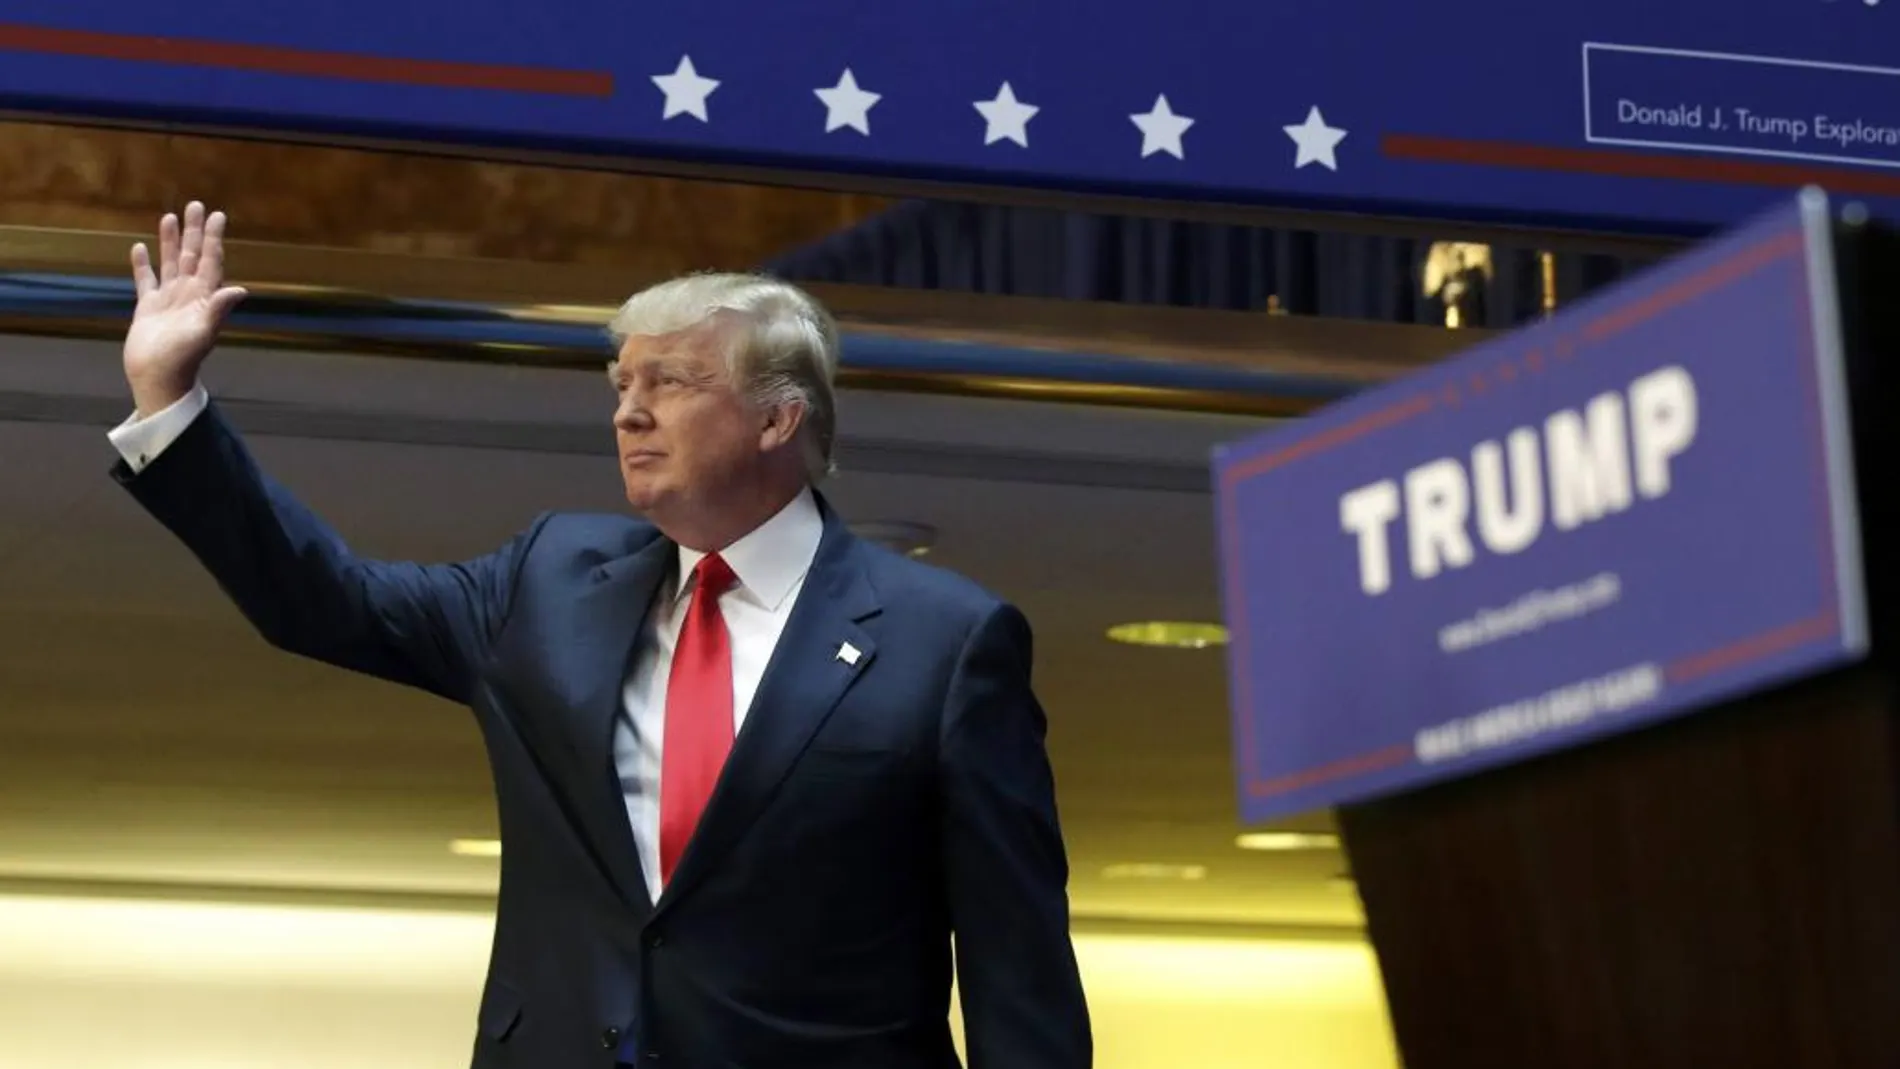 El magnate Donald Trump hace pública su candidatura